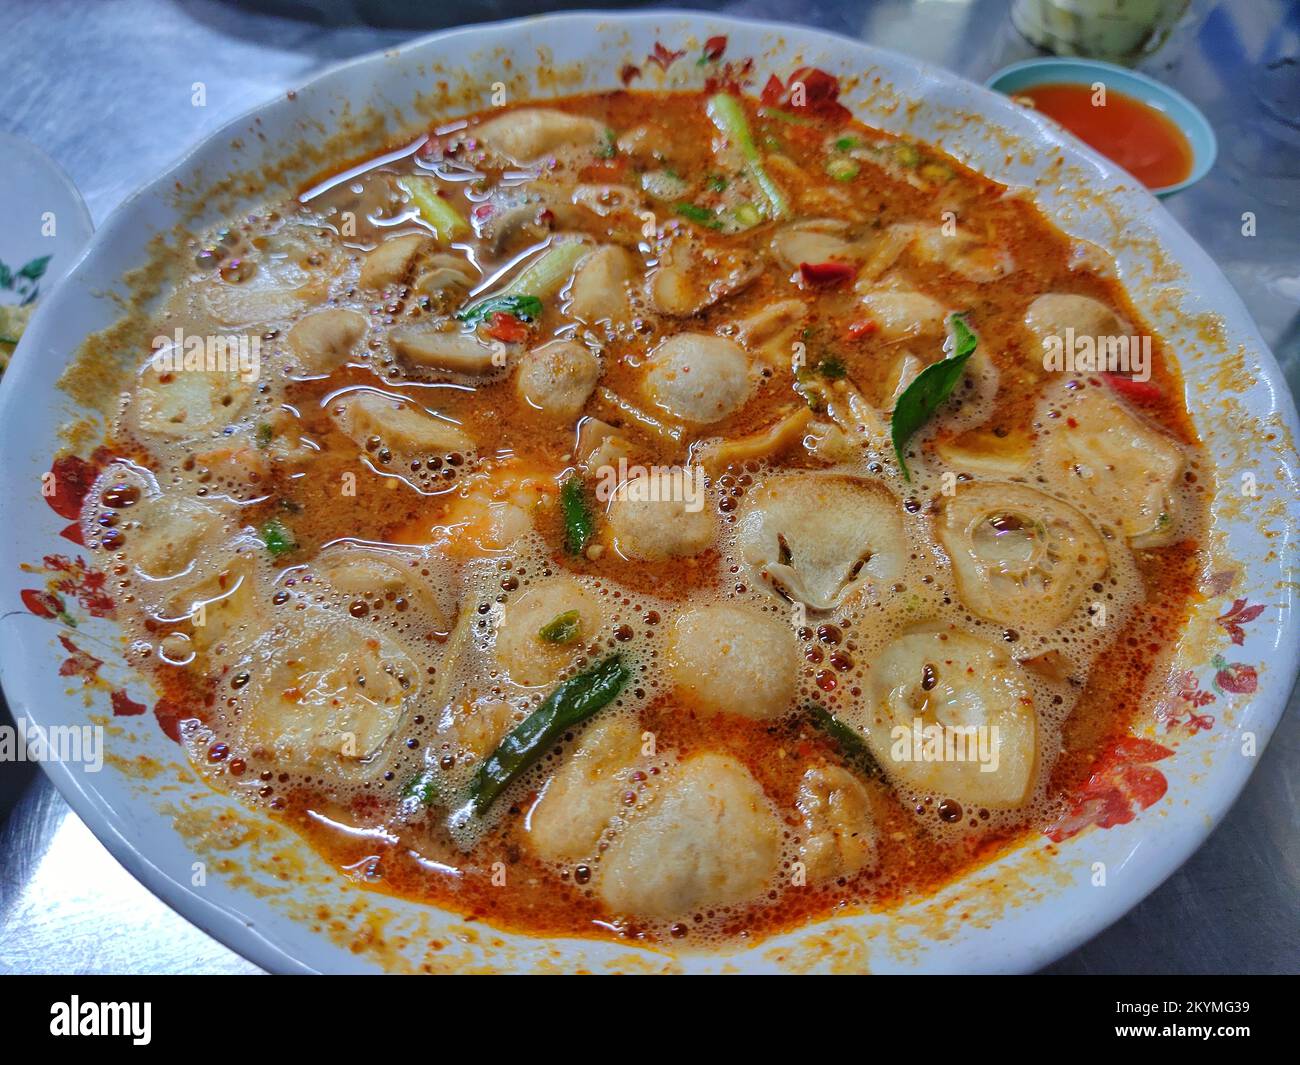 Tom yum - célèbre cuisine thaïlandaise, chaud et aigre soupe thaïlandaise qui a cuit avec des crevettes Banque D'Images